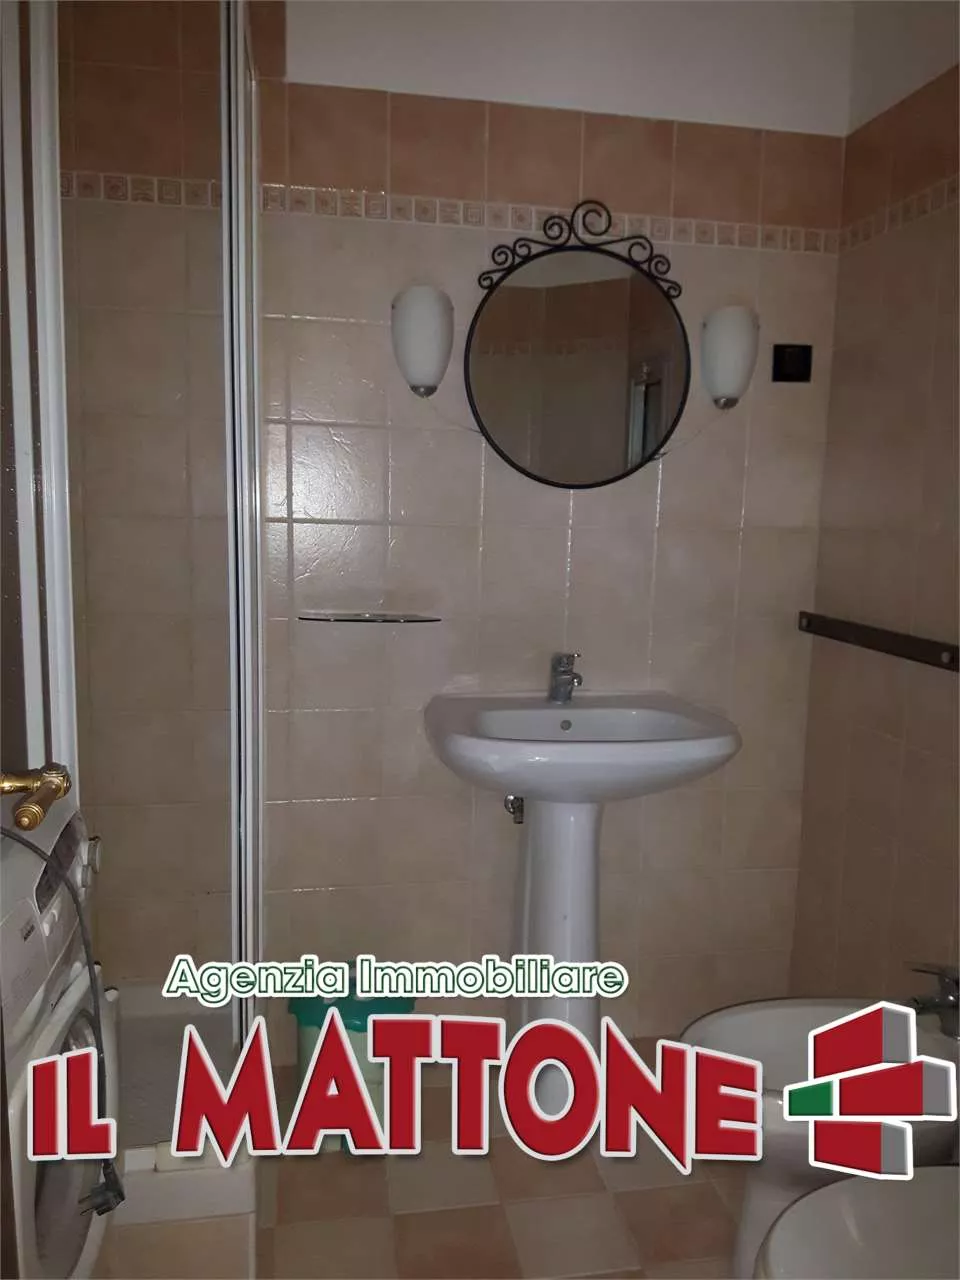 Immagine per Appartamento in vendita a Mignanego via Vittorio Veneto